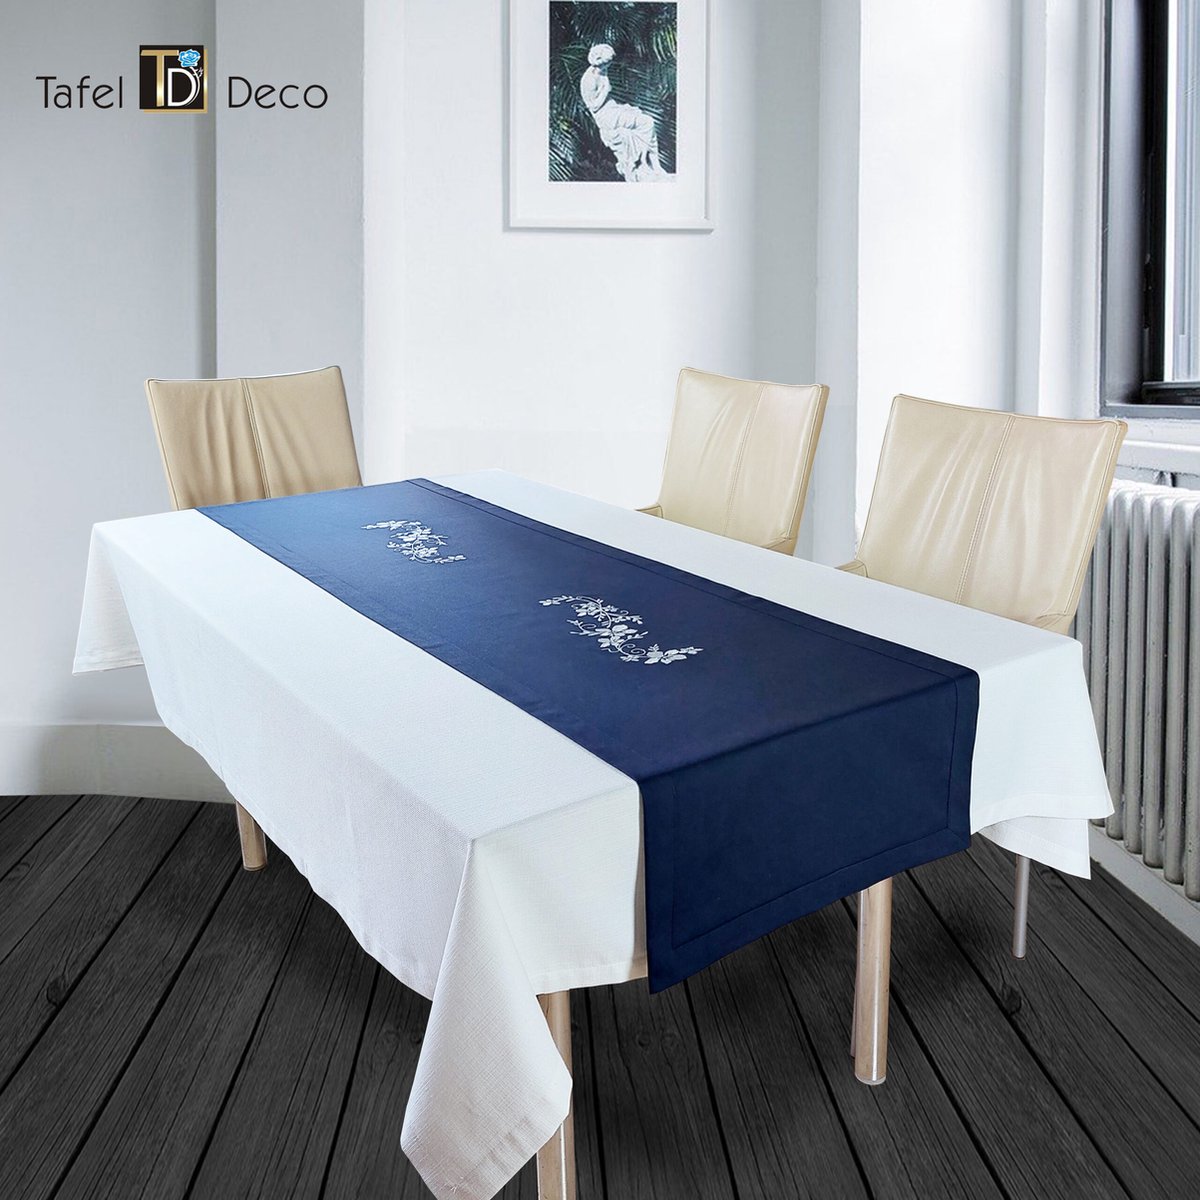 Tafel-Deco tafelloper donker blauw geborduurd met witte bloemen 40 x 180 cm